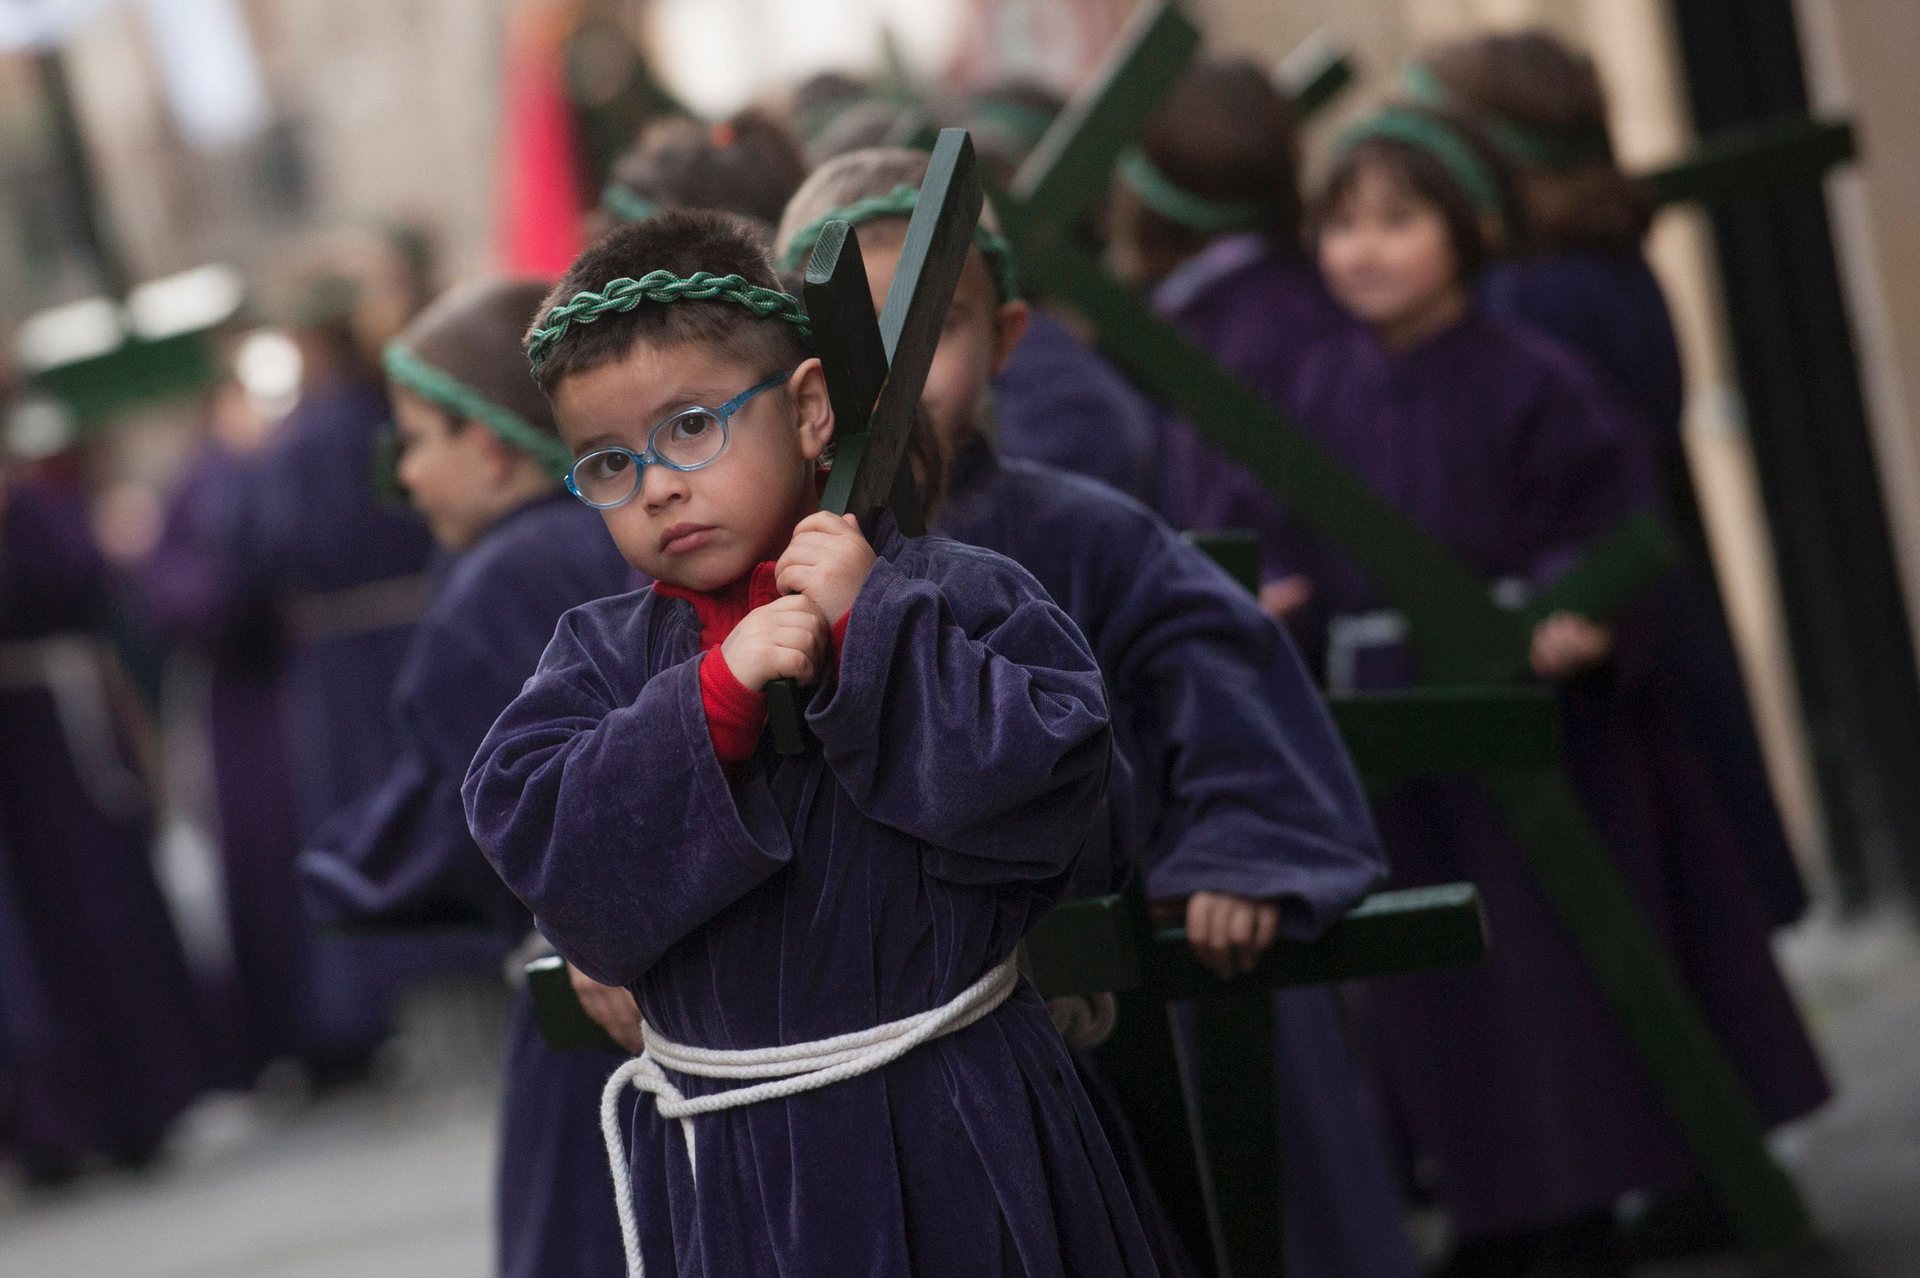 Сегура, Джипузкоа Децата носят кръстове по време на парад в северното баски село Снимка: Gari Garaialde / AFP / Getty Images